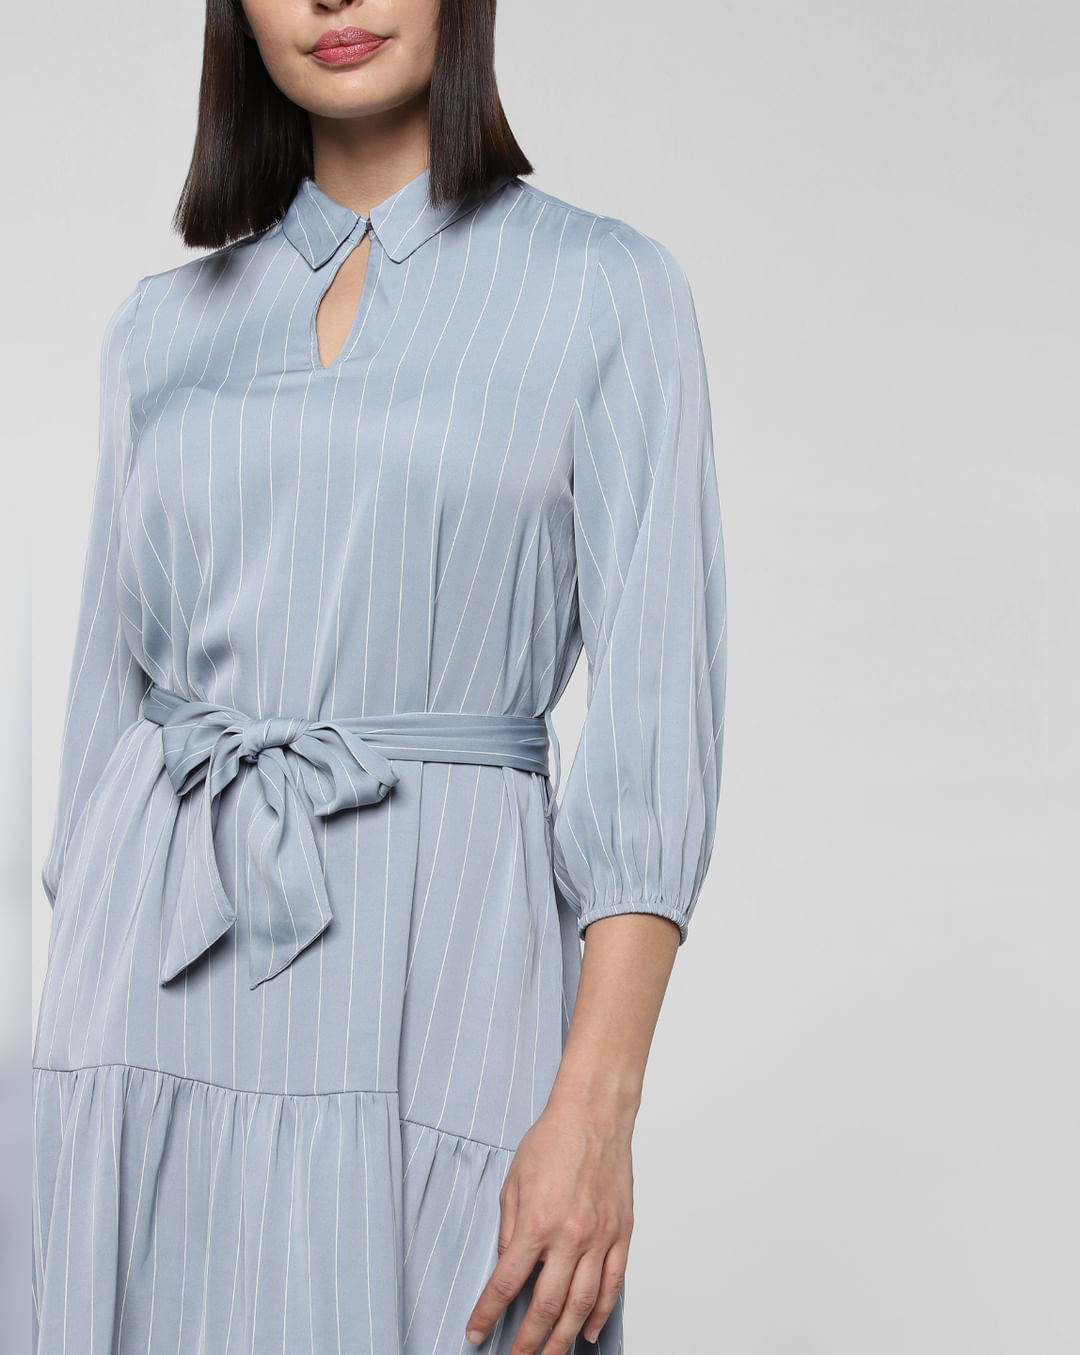 lure døråbning Hejse Shift Dresses For Women - Buy Blue Striped Belted Shift Dress Online In  India.